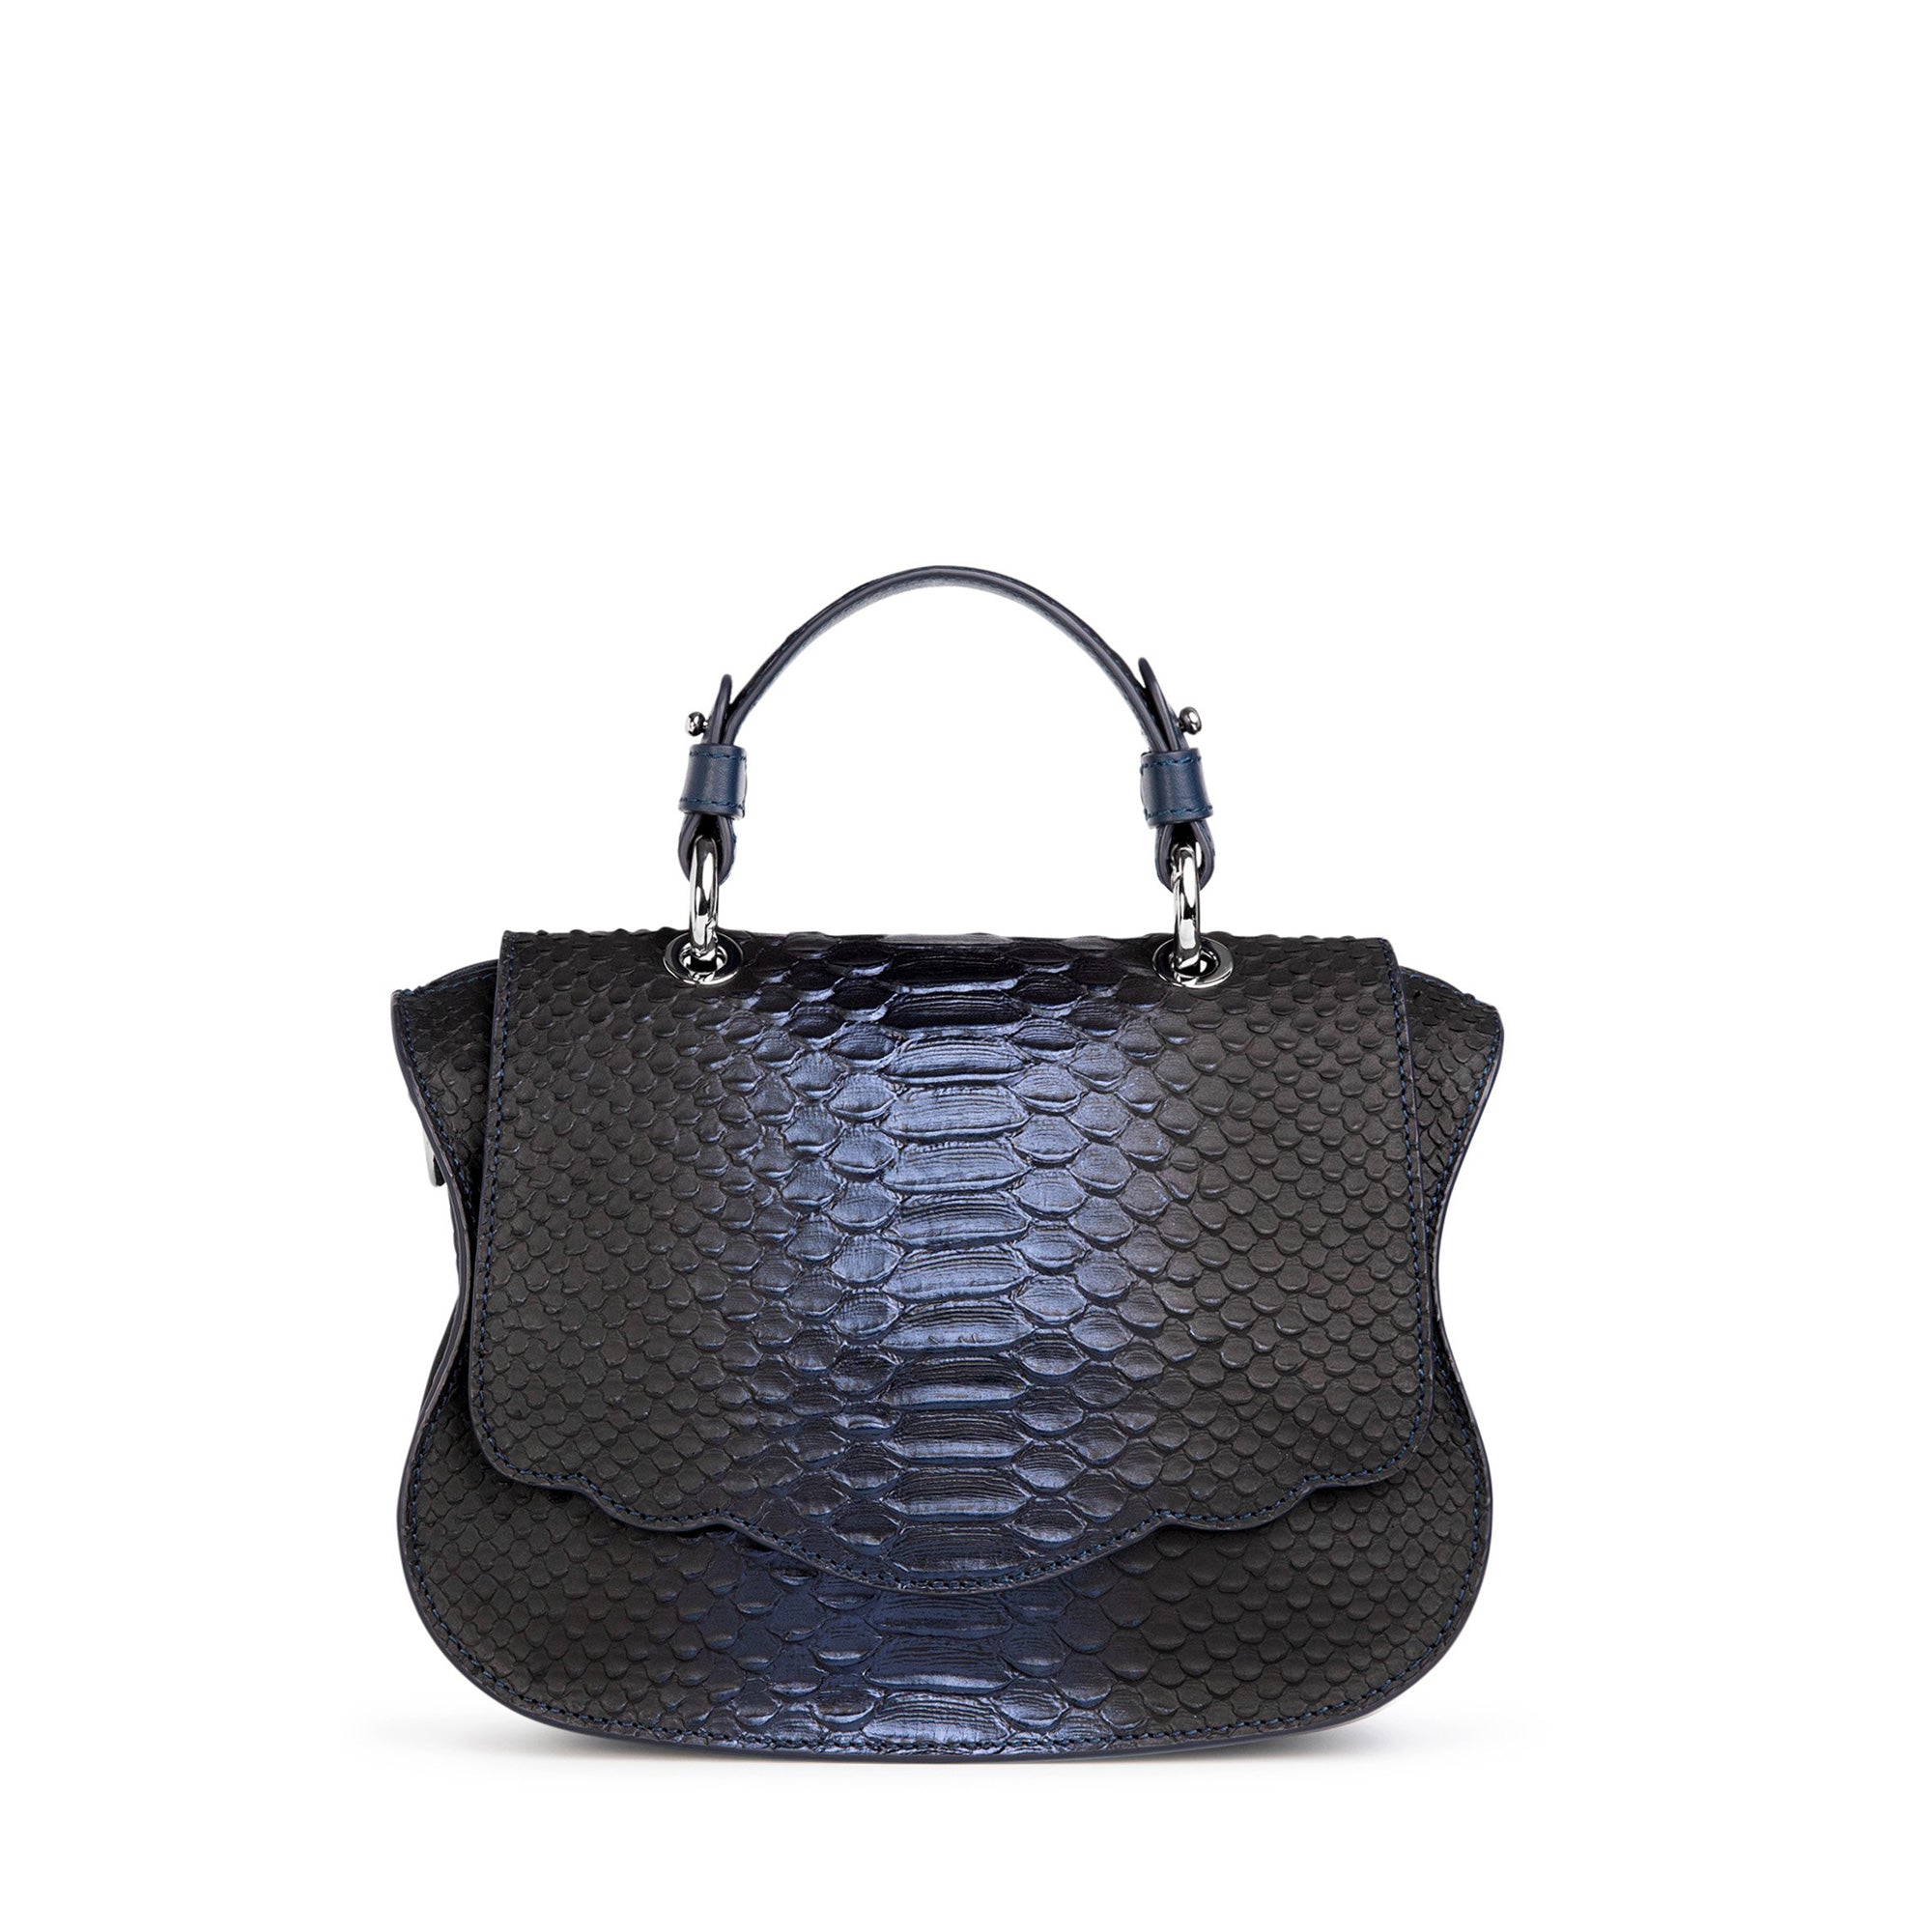 Black Snakeskin Bag